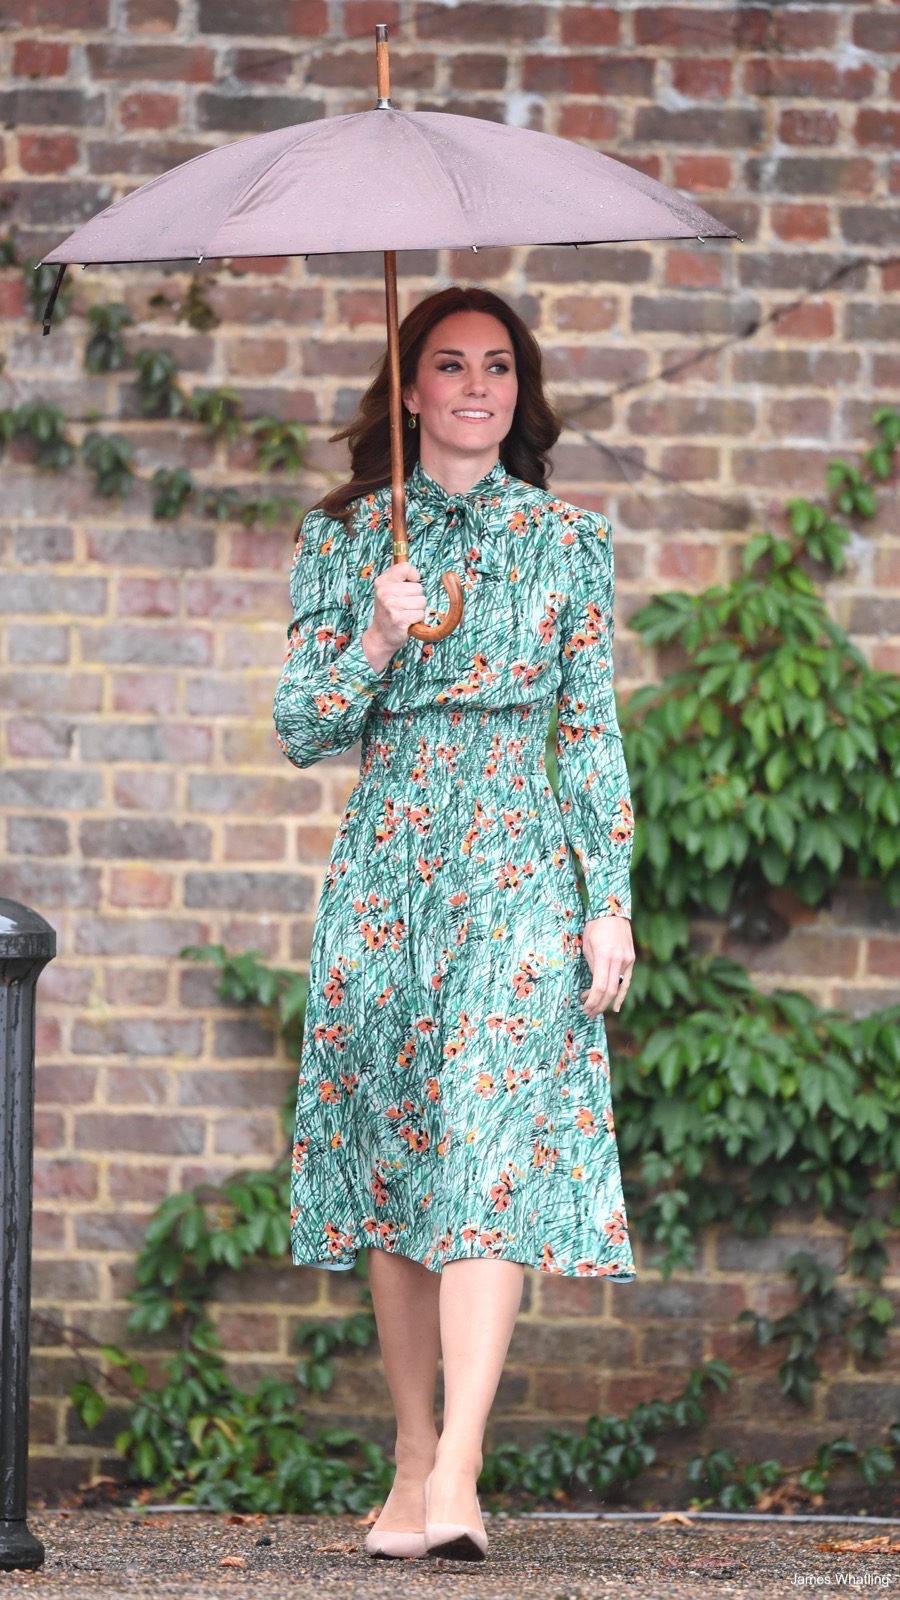 Kate Middleton wearing Prada during a visit to the White Garden